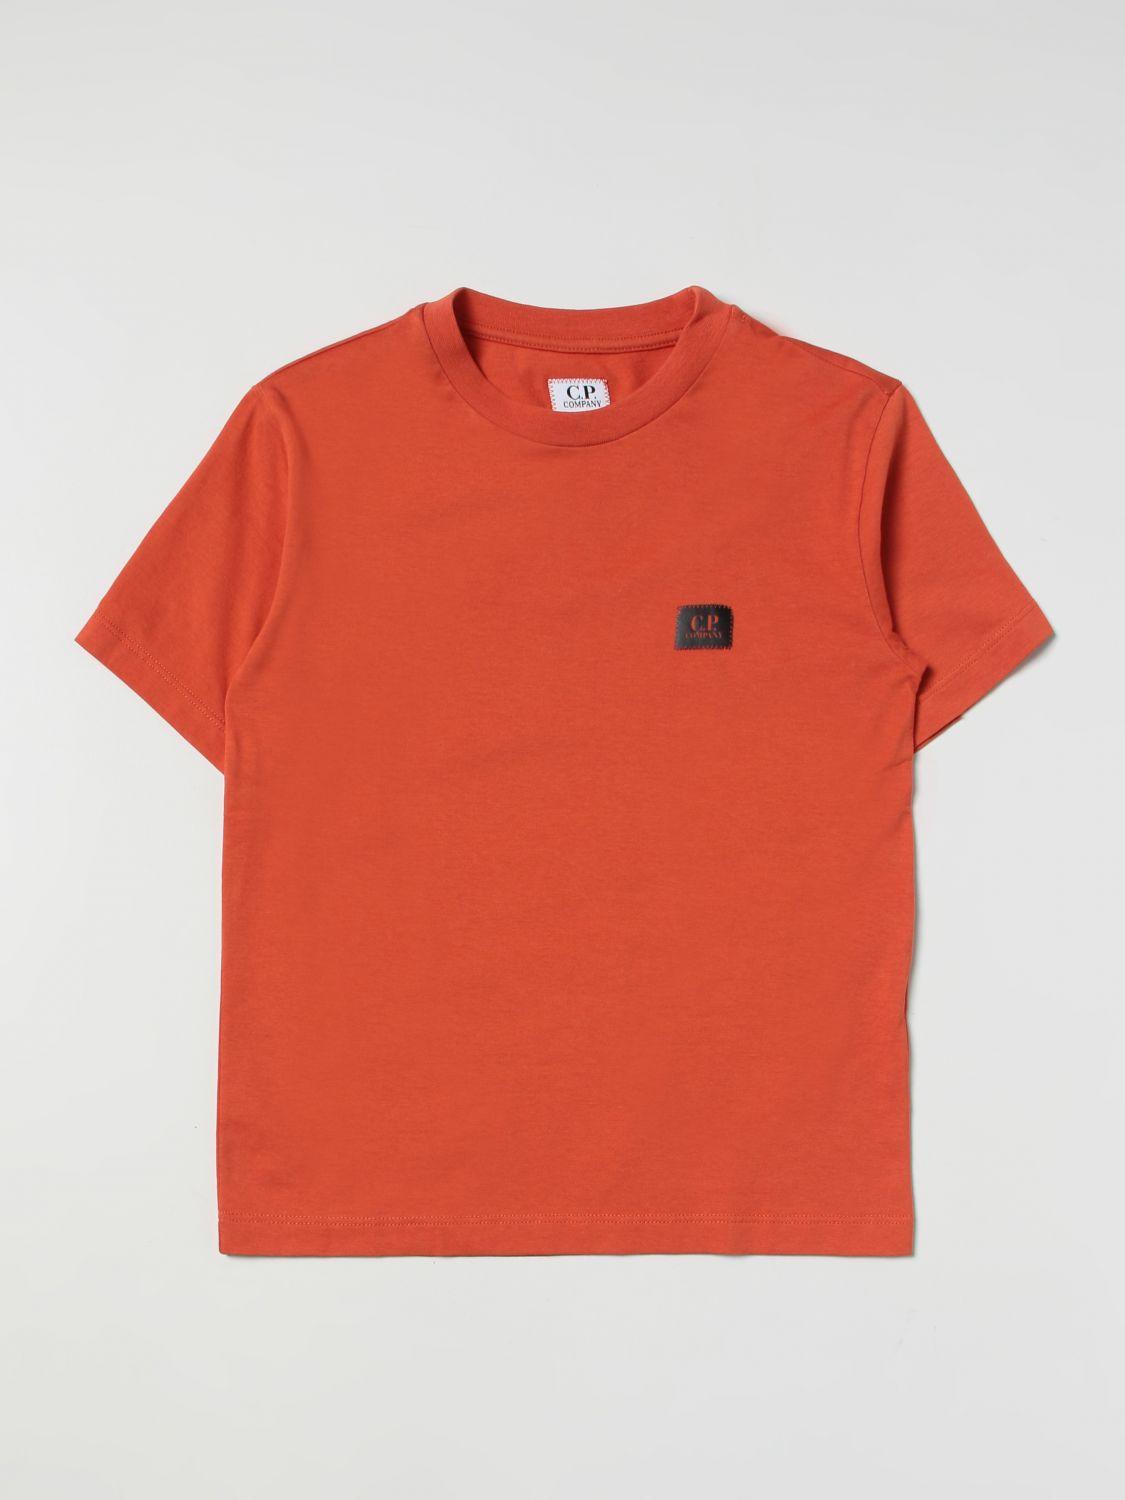 T恤 C.P. COMPANY 儿童 颜色 橙色